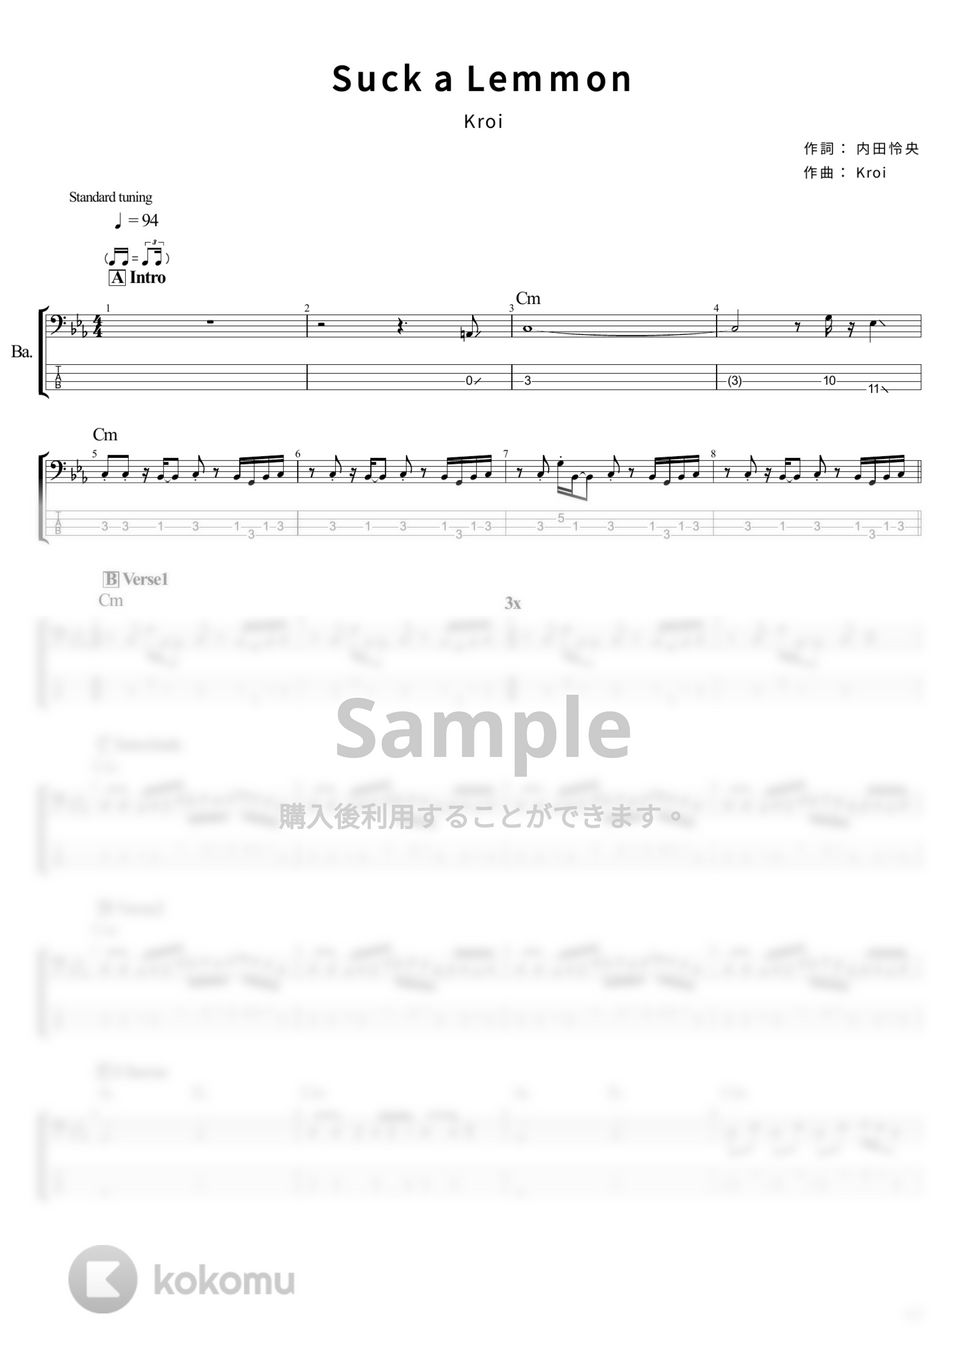 Kroi - Suck a Lemmon (ベース Tab譜 4弦) by T's bass score